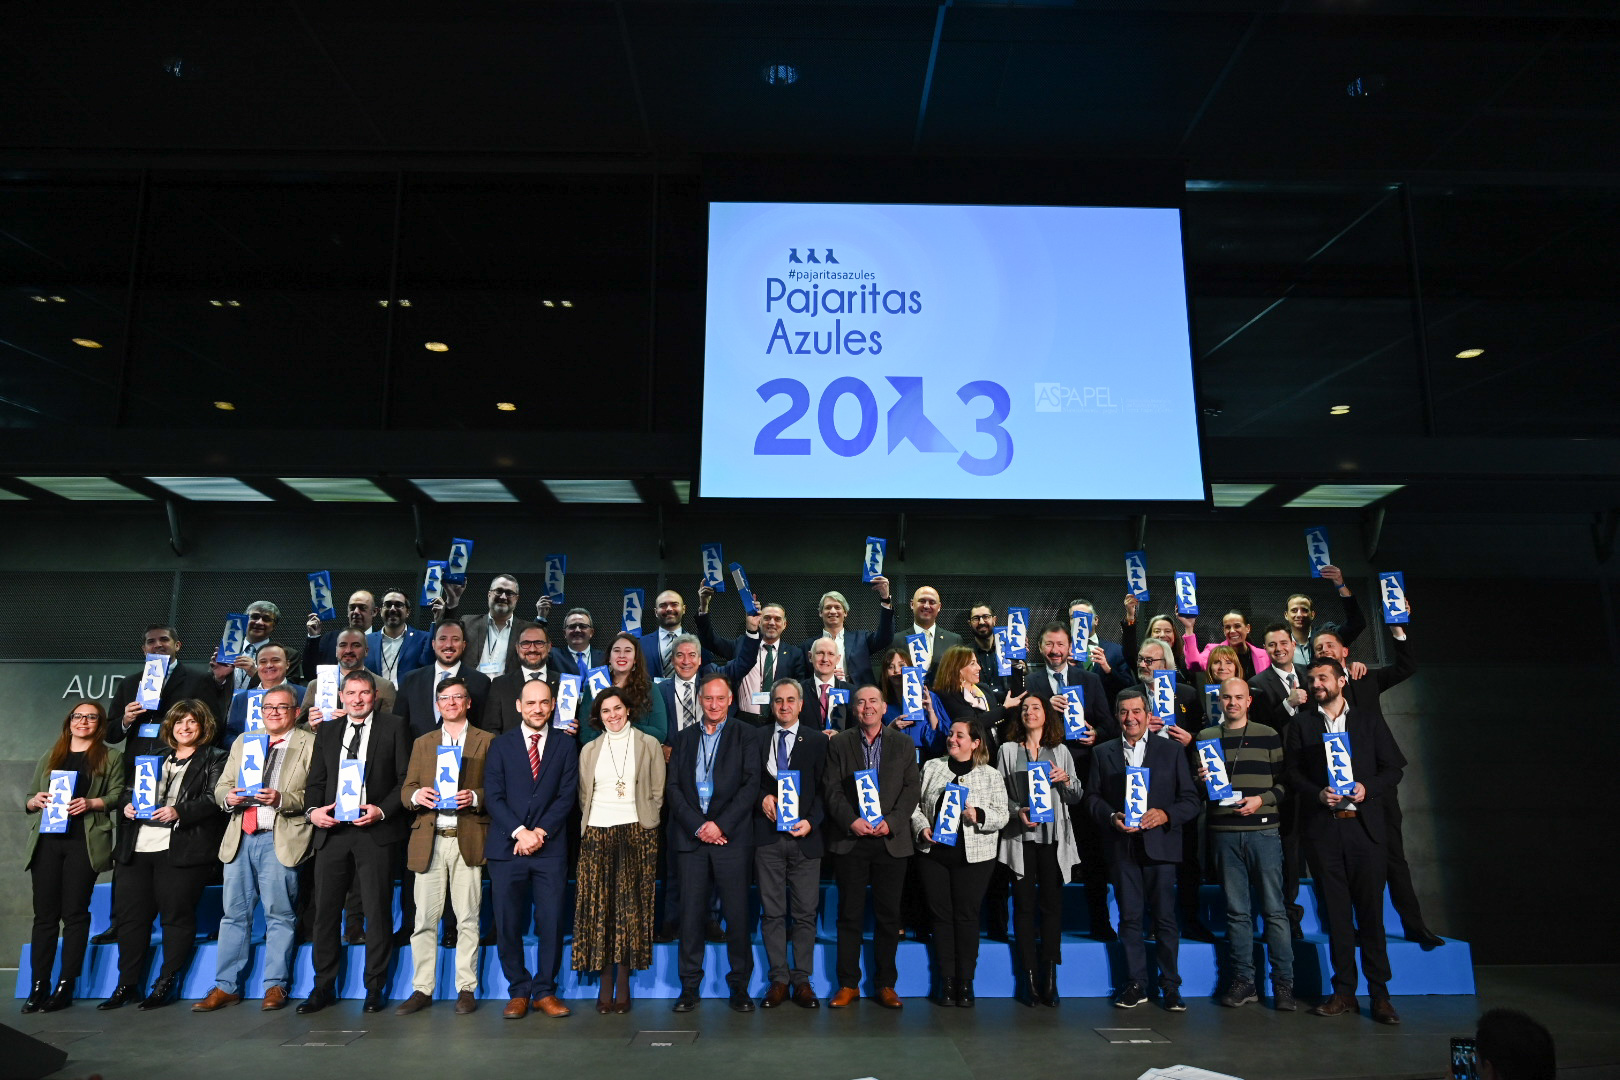 Fotografía de familia de los galardonados con los premios Pajaritas Azules. Imagen cedida por la Asociación Española de Fabricantes de Pasta, Papel y Cartón (Aspapel).